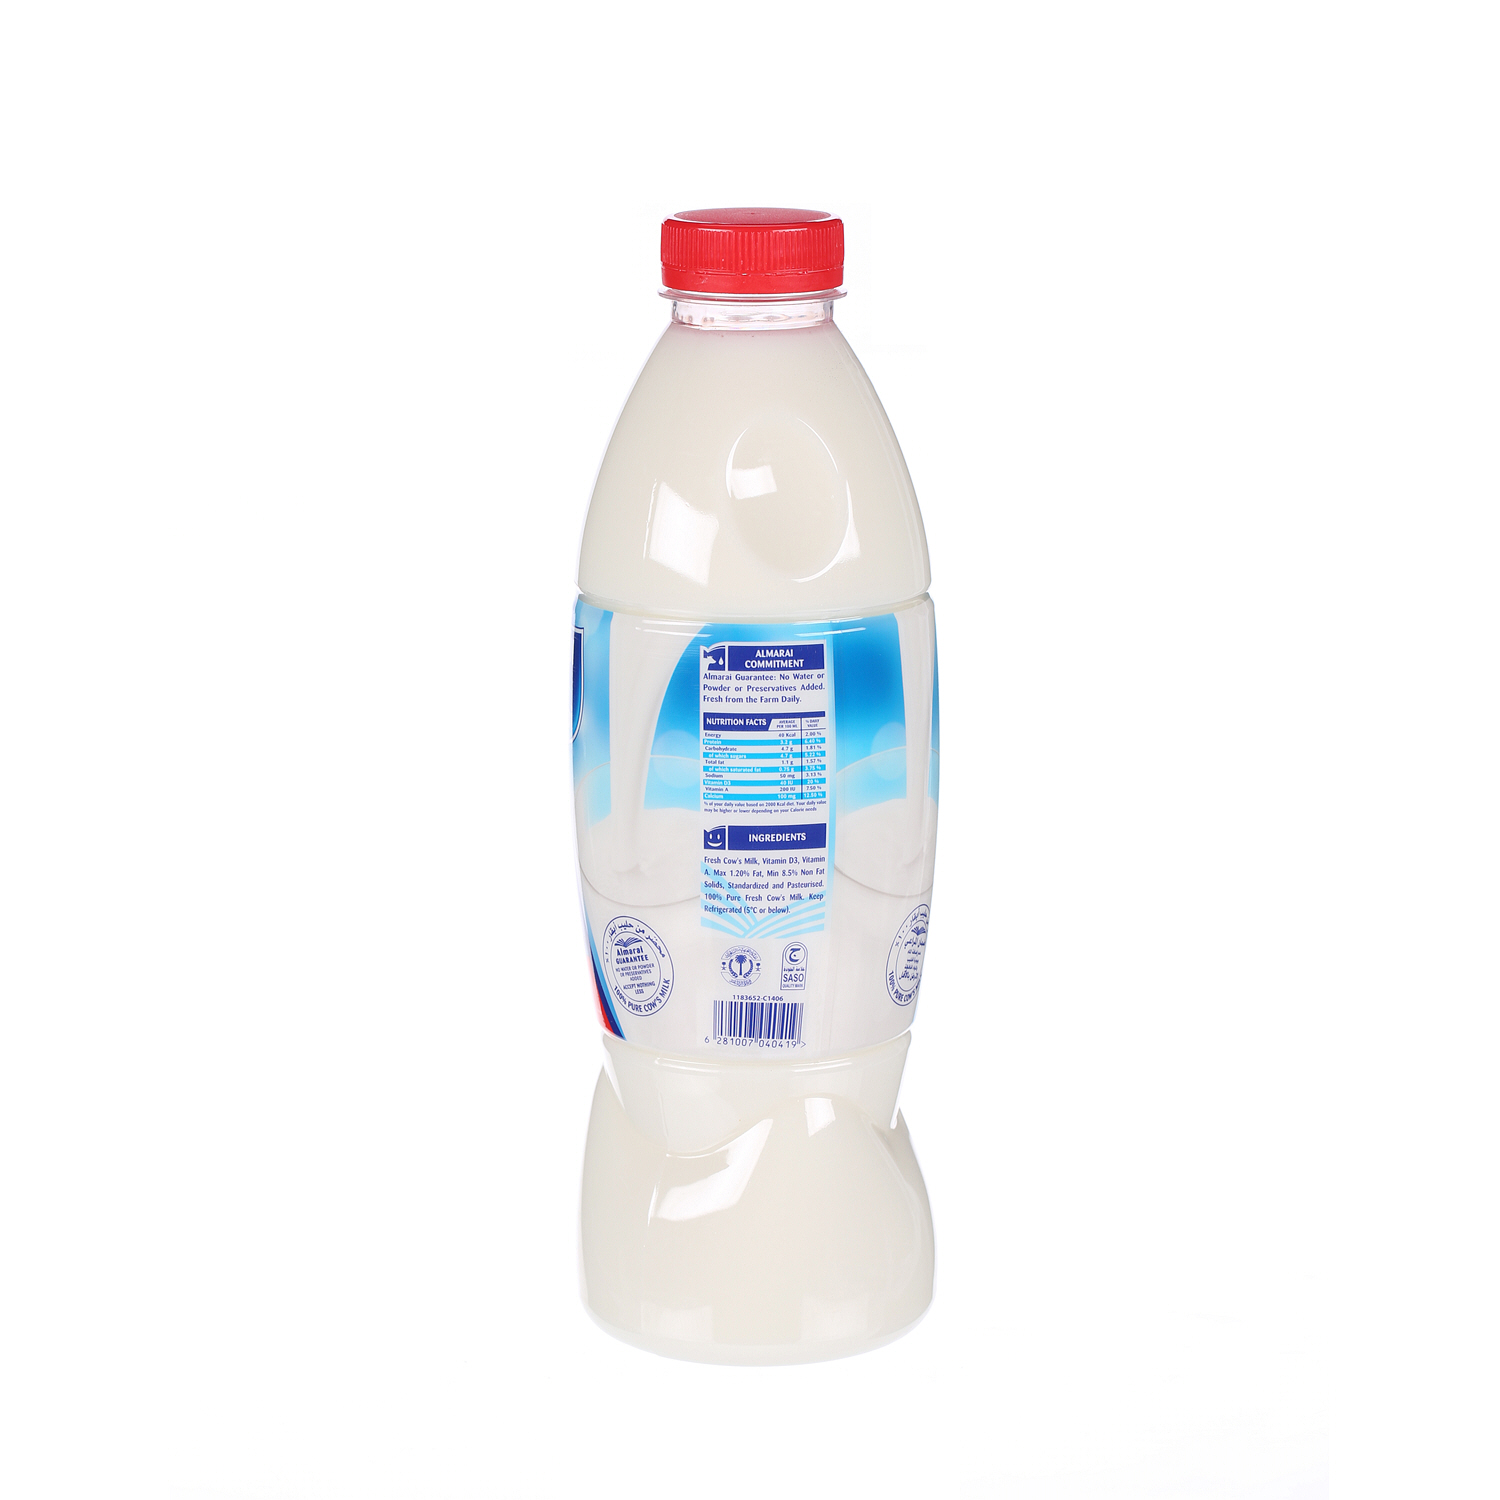 Al Marai Fresh Milk Low Fat 1 L